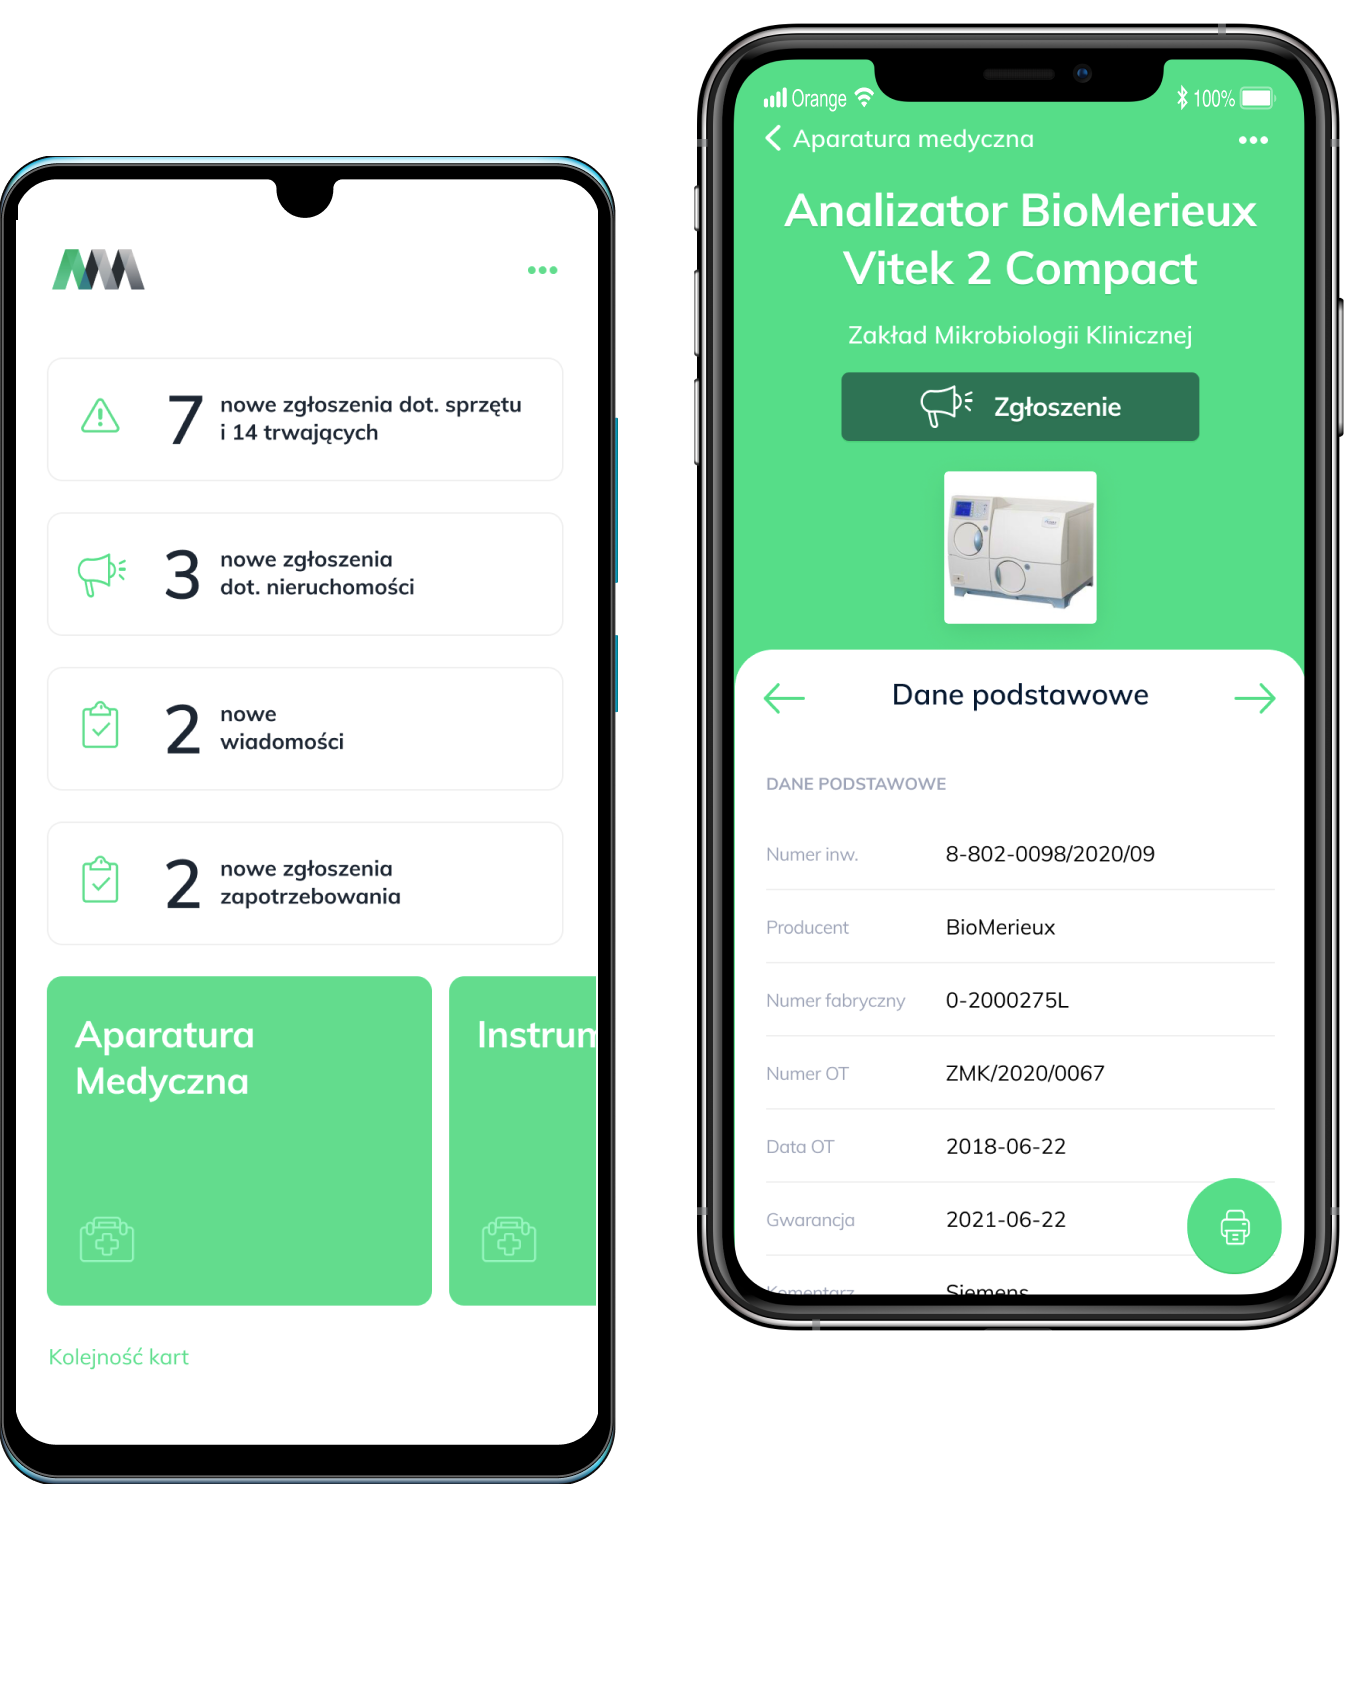 Appmedica mobile - mobilna aplikacja do zarządzania aparaturą medyczną